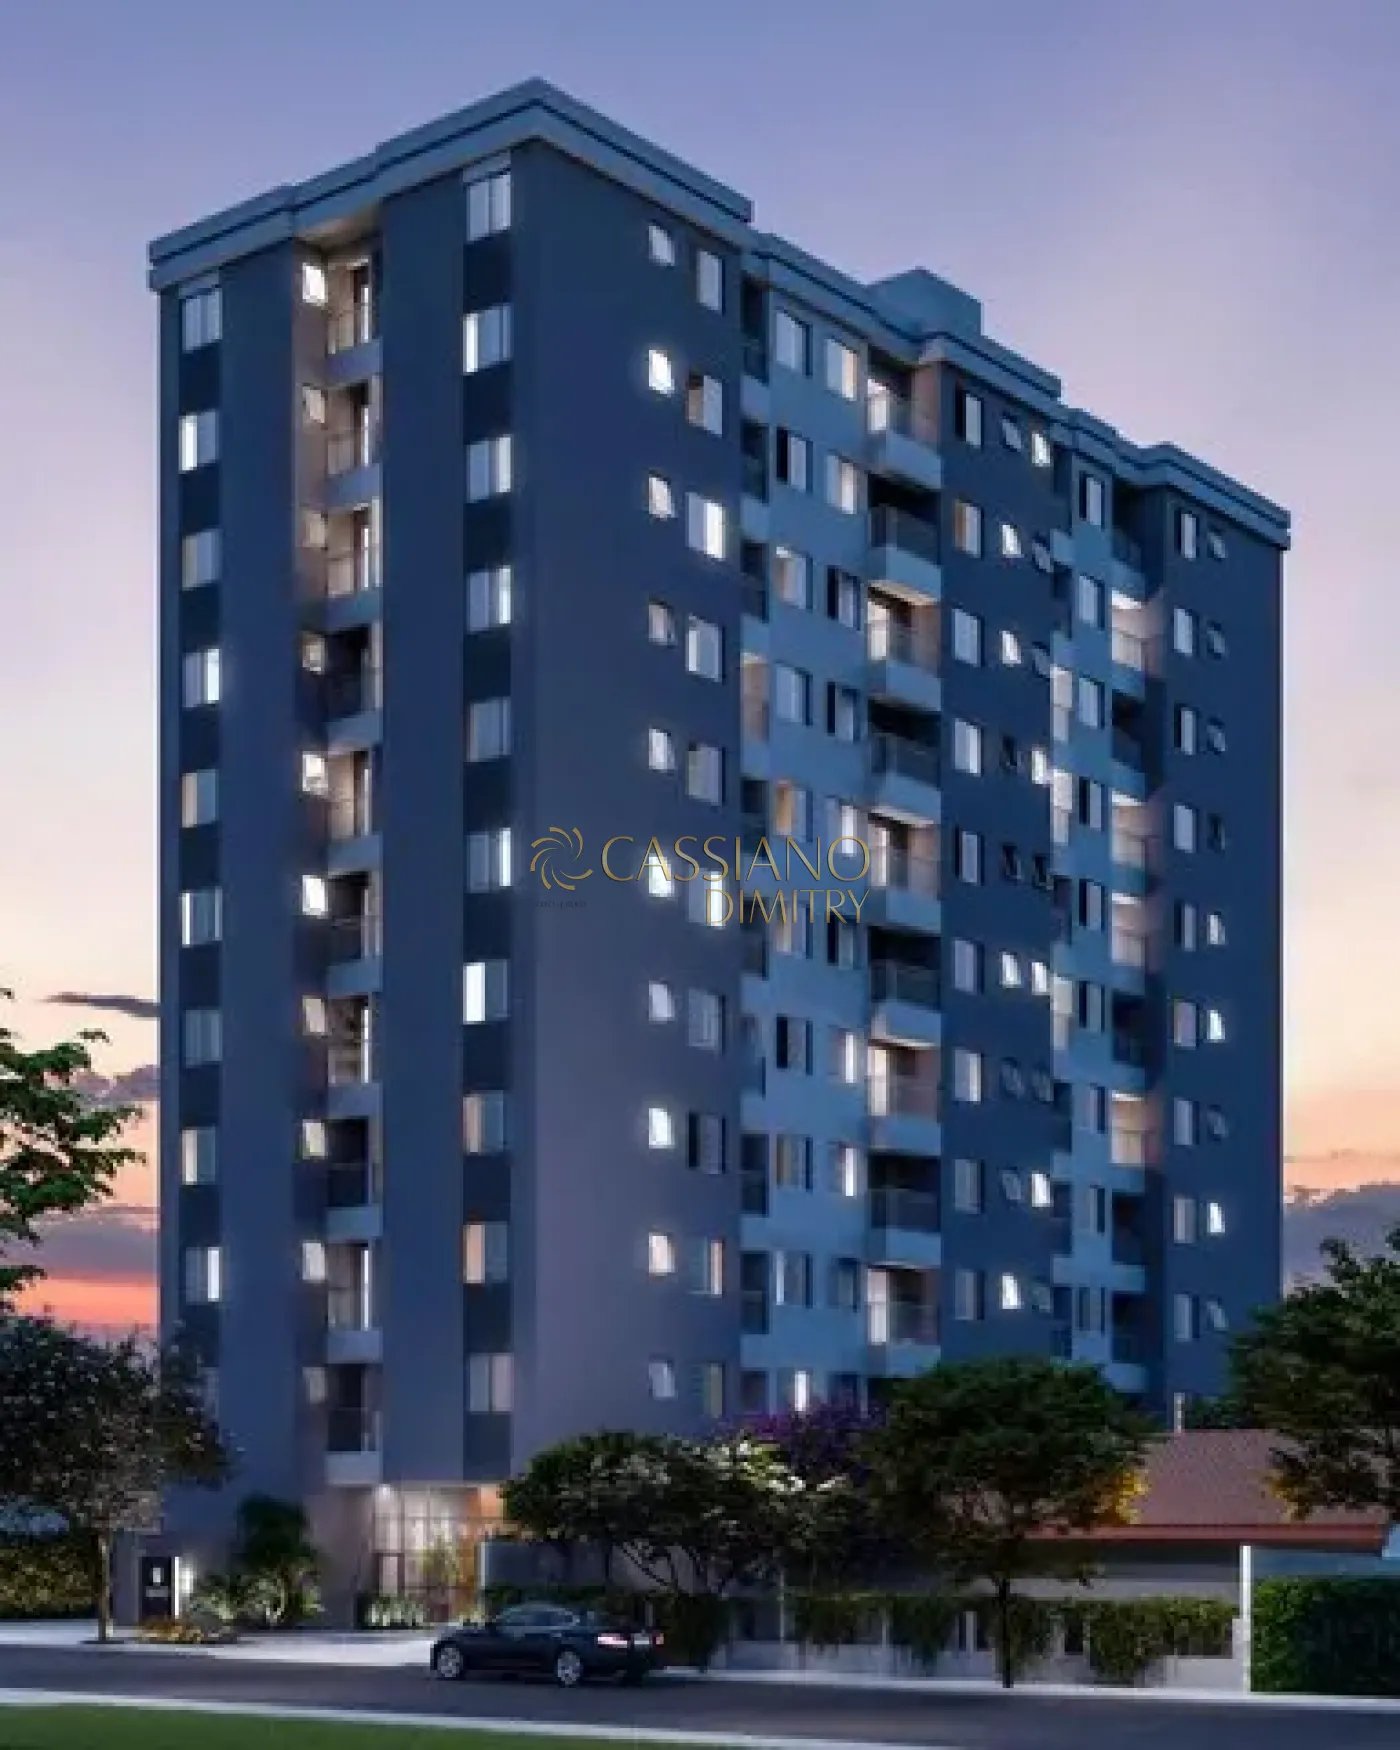 Comprar Apartamento / Padrão em São José dos Campos R$ 500.000,00 - Foto 1